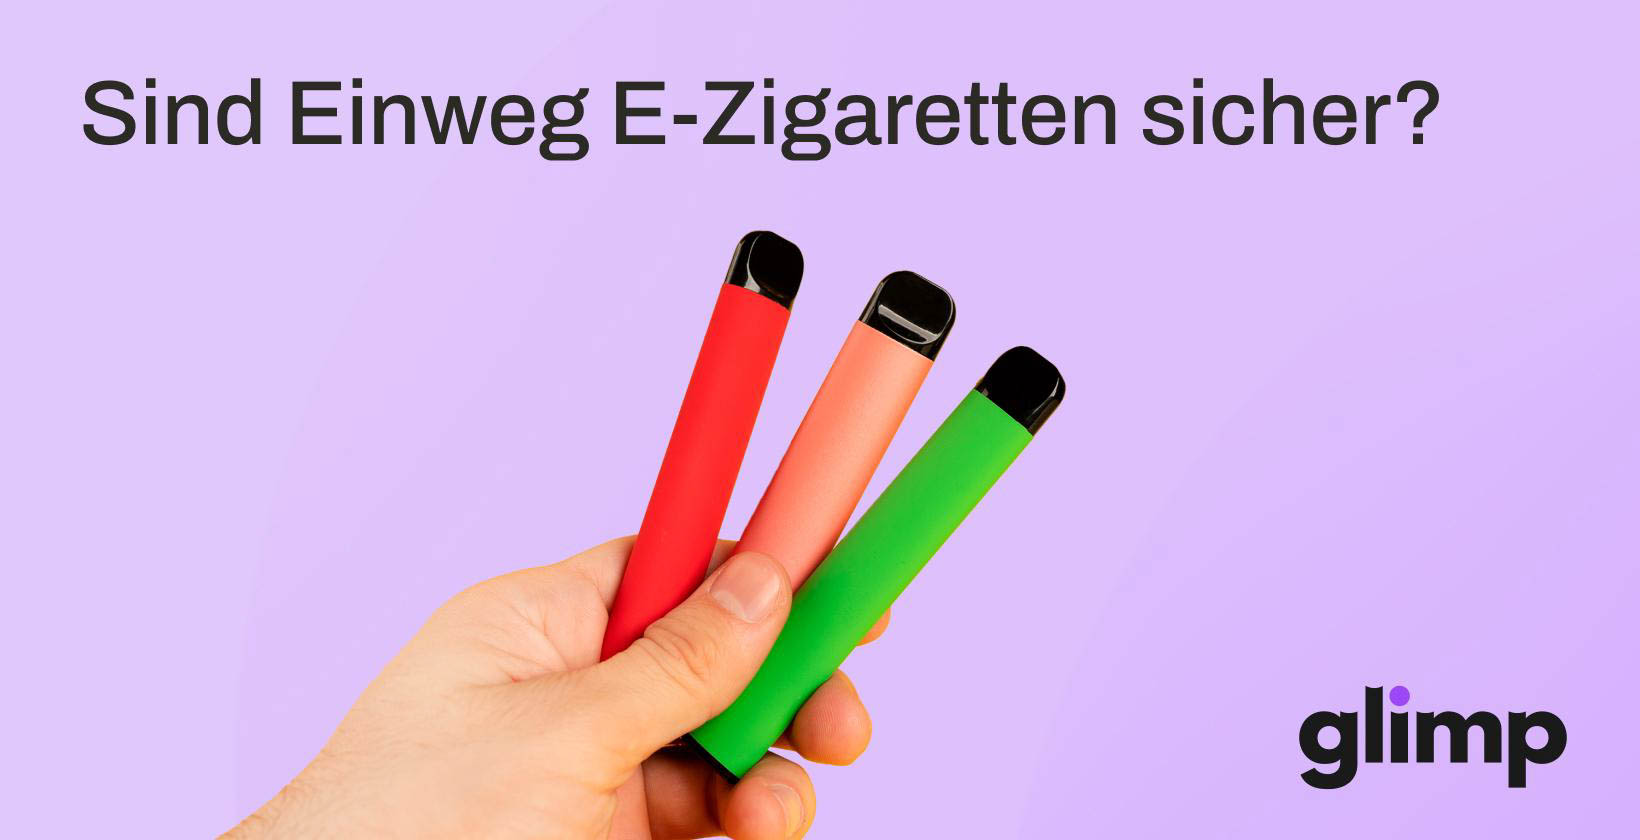 Sind Einweg E-Zigaretten sicher? Was sind Einweg E-Zigaretten?